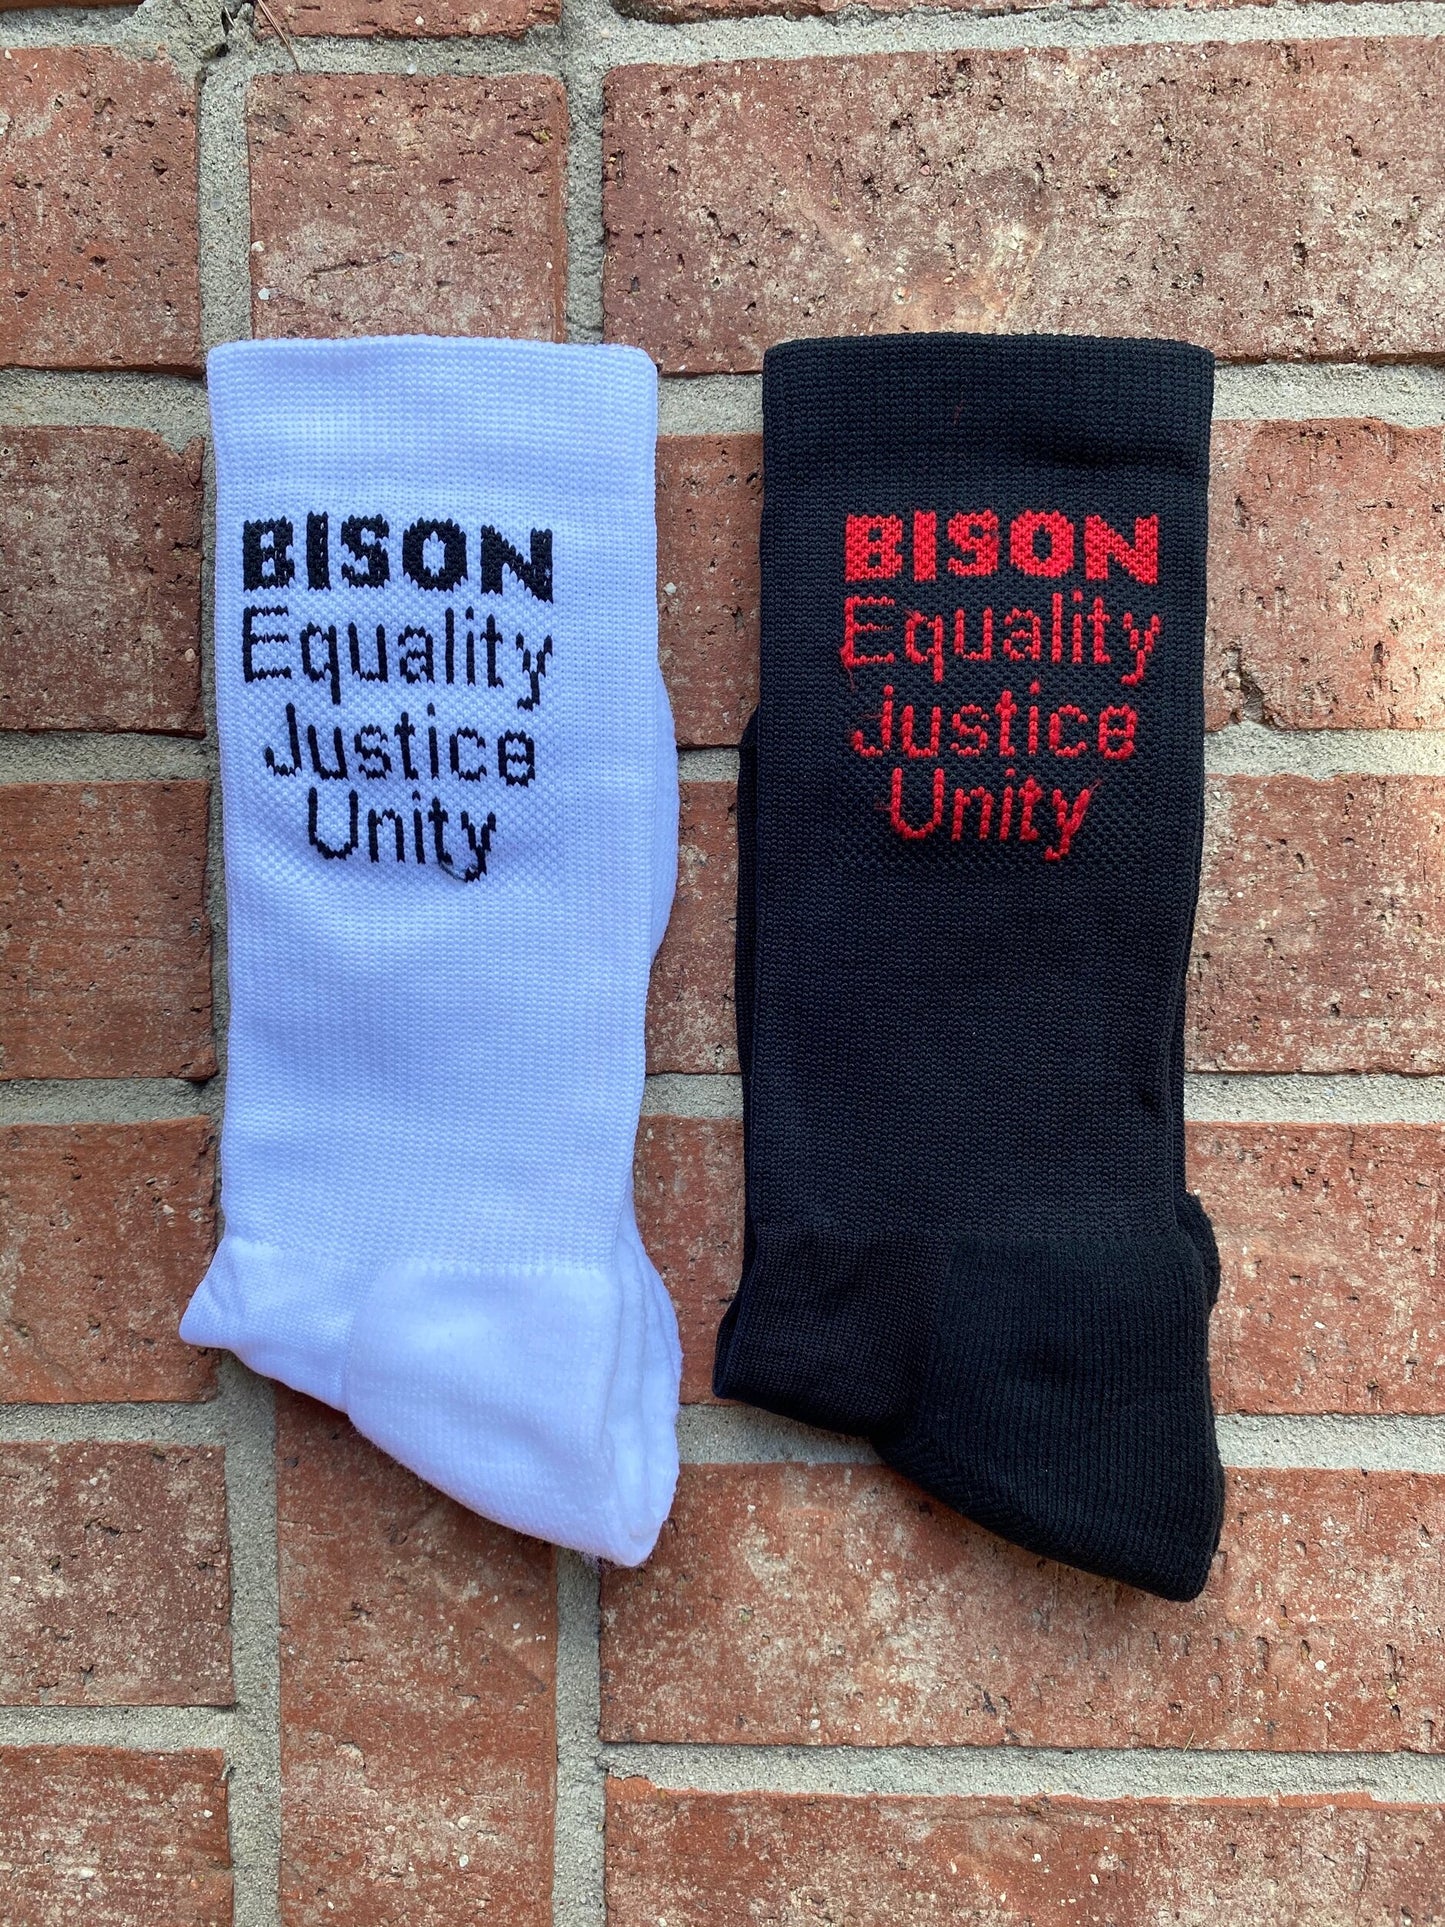 BISON Equality, Unity, Justice Socks